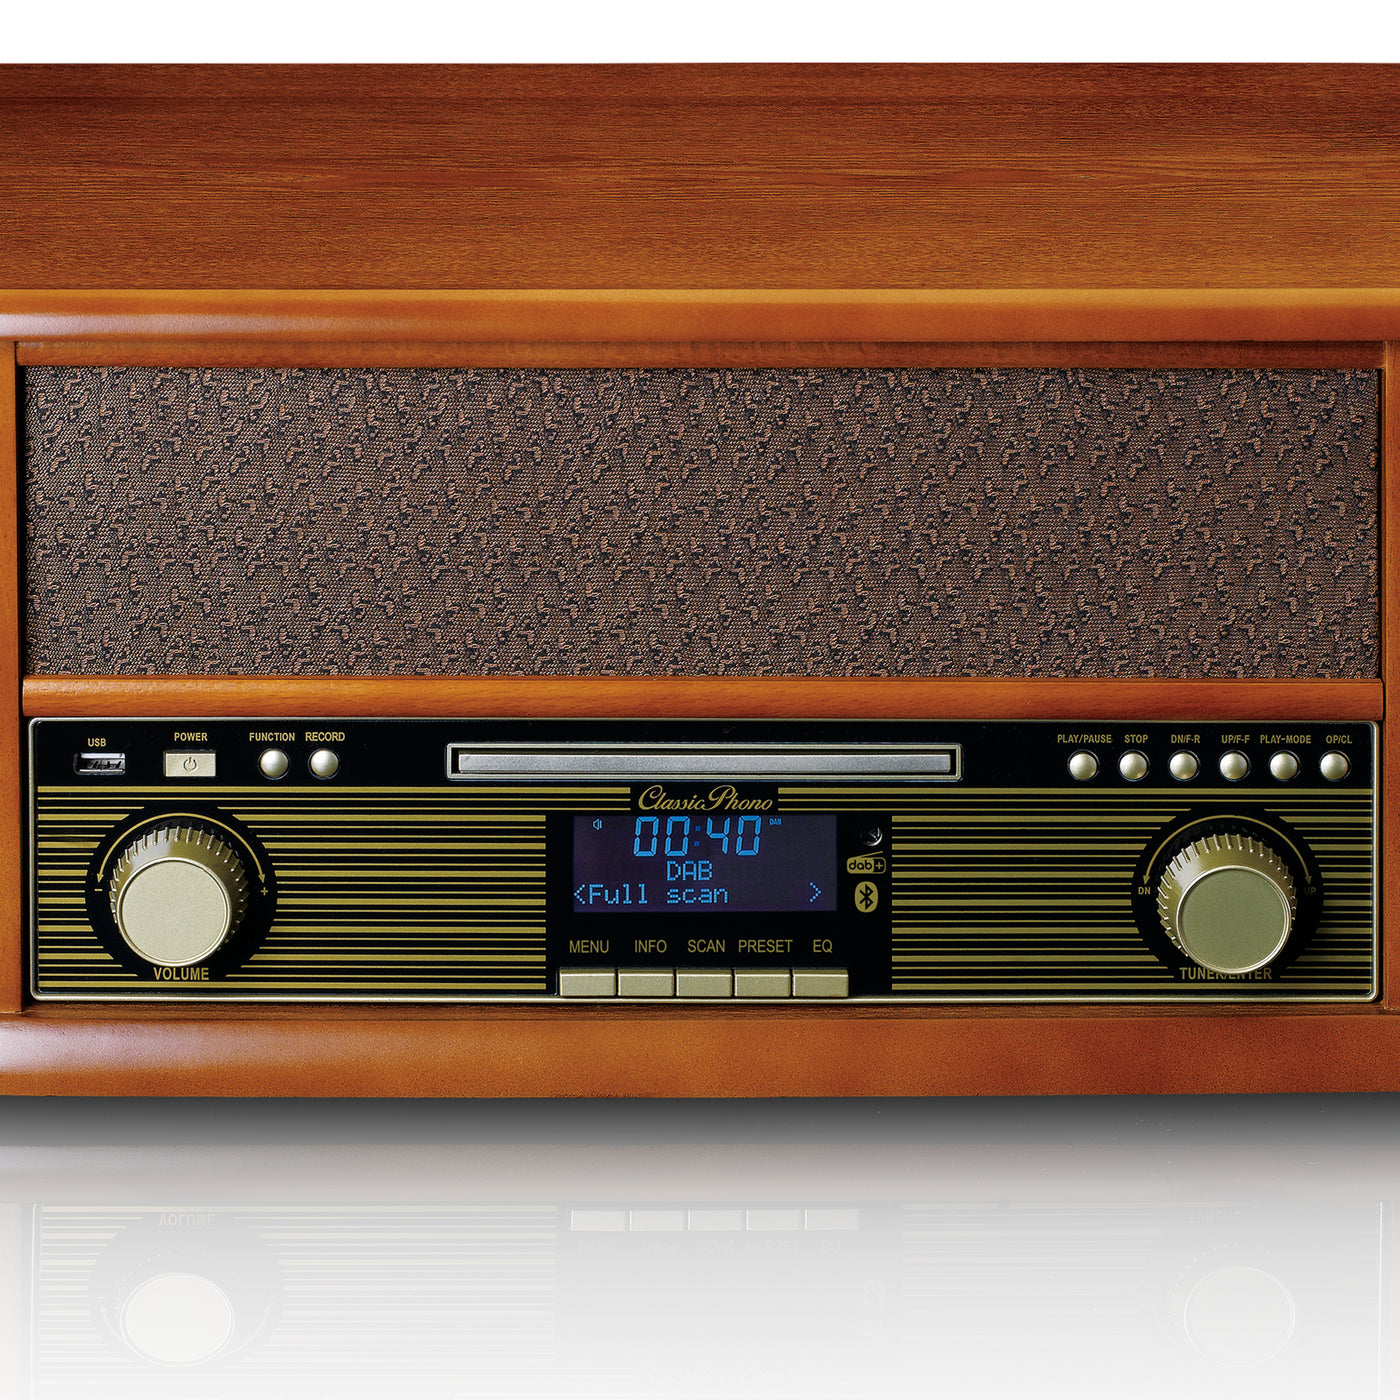 Classic Phono TCD-2570 - Platine avec radio DAB+ / FM, enregistreur USB, lecteur de CD et de cassettes - Bois